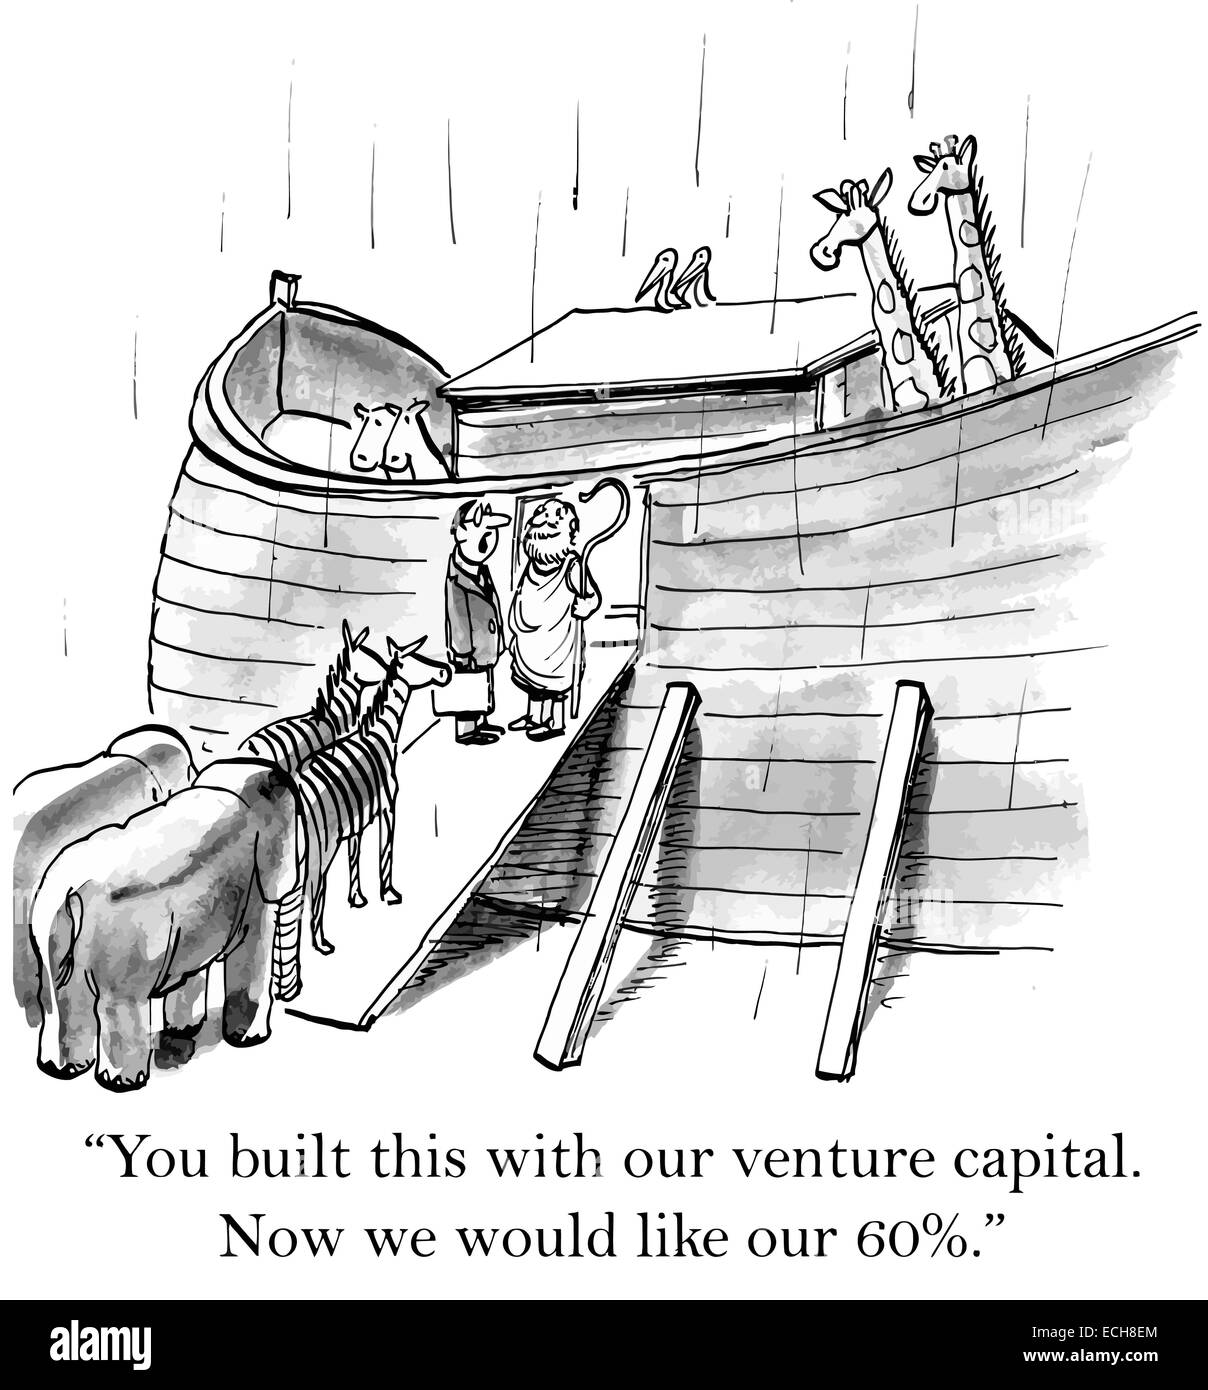 'Vous avez construit cette avec notre capital de risque. Maintenant, nous aimerions que nos 60 %.' Illustration de Vecteur